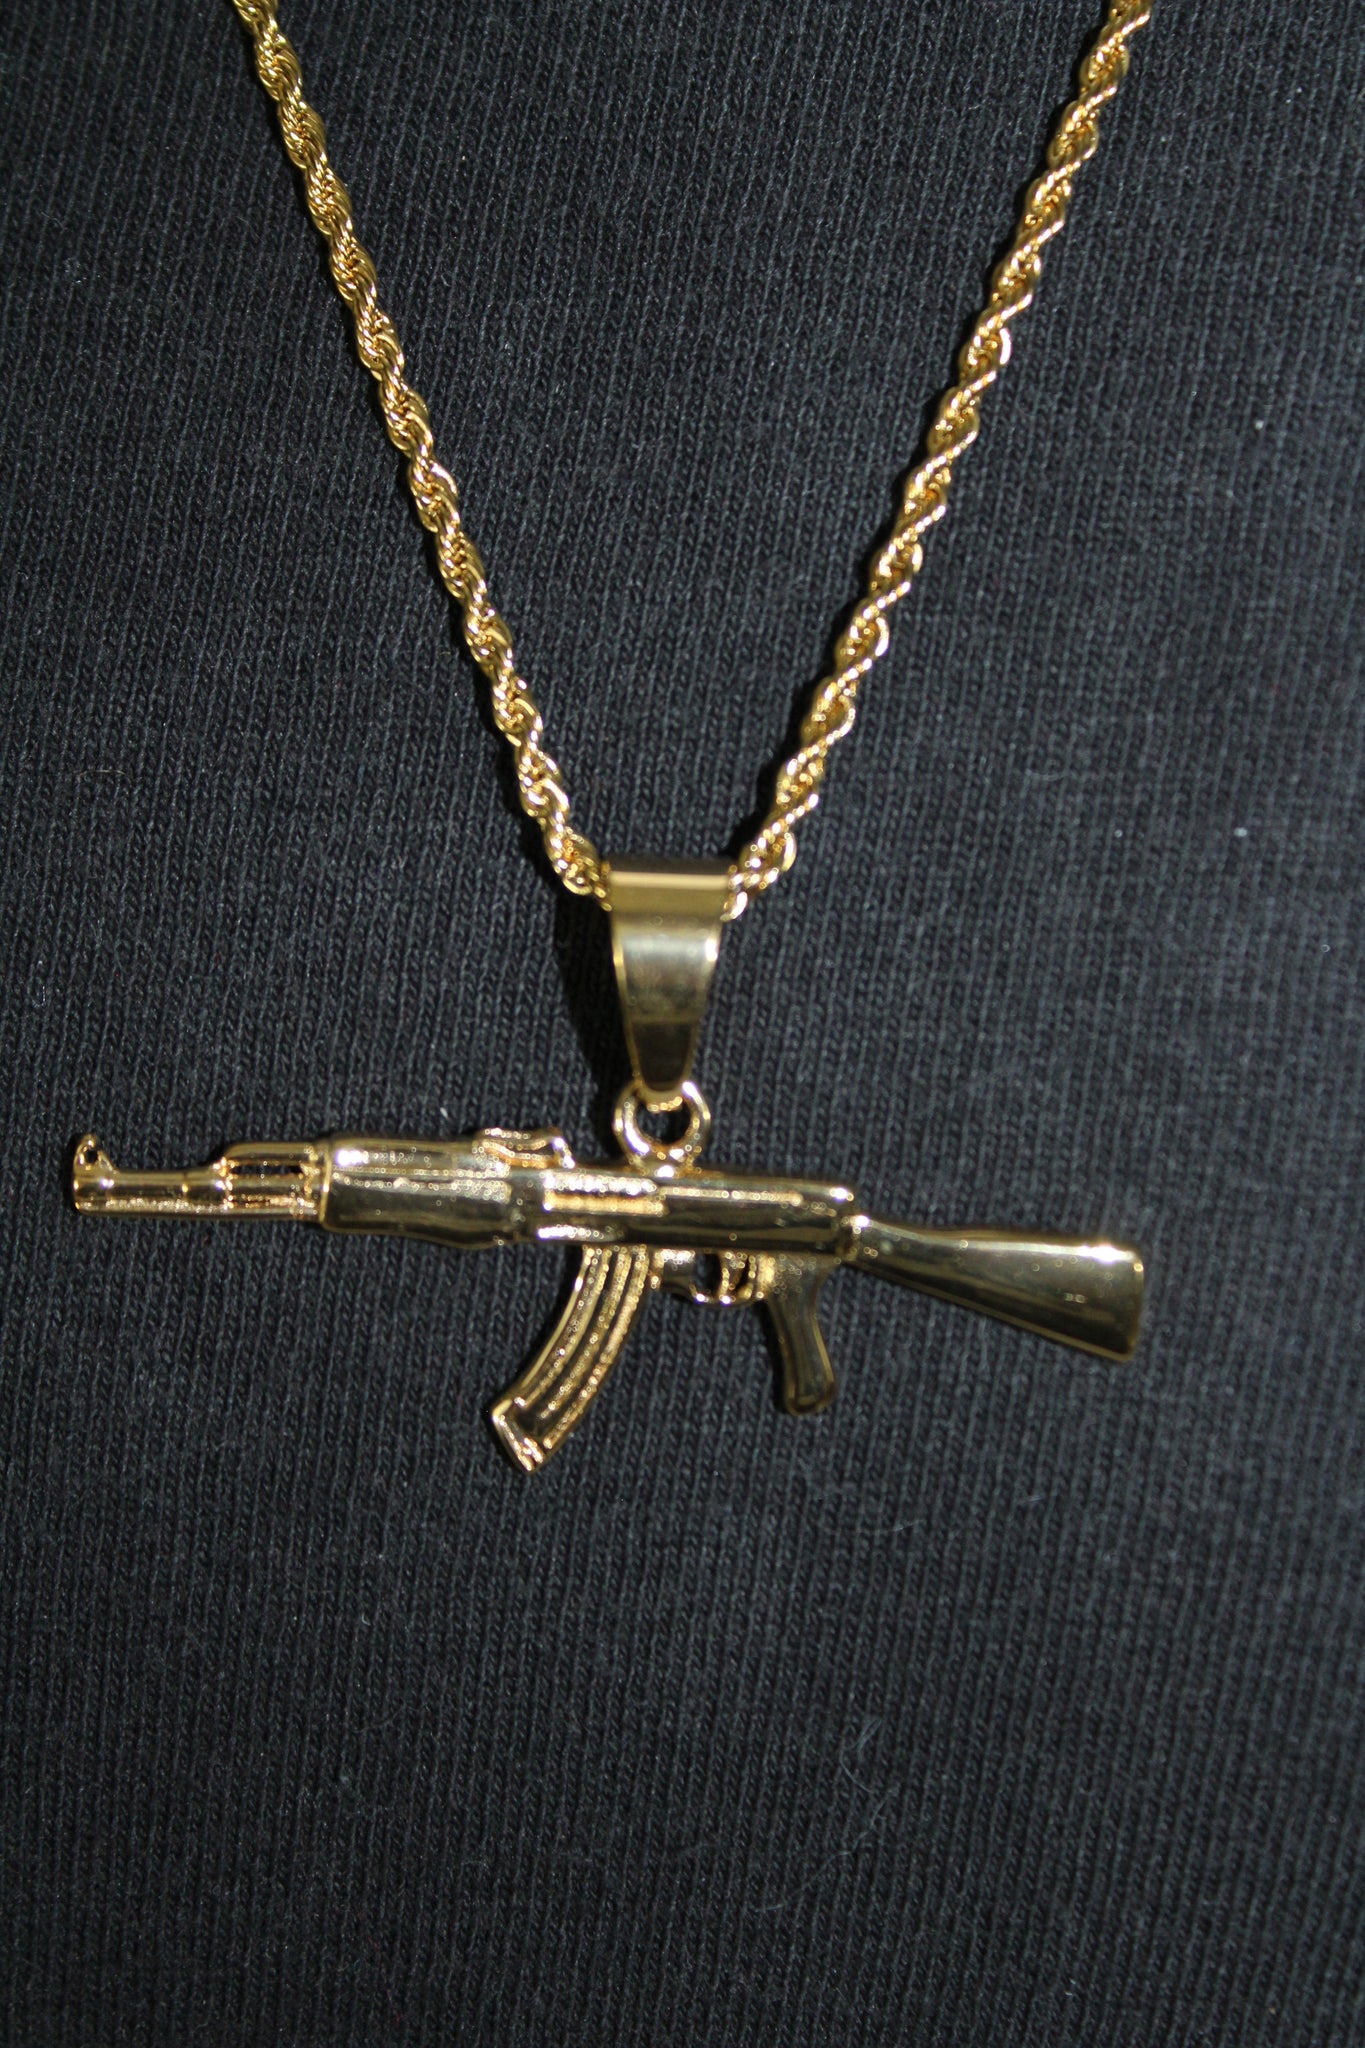 Hiphop Punk Gun Necklace Pendant Male 4size Chain Hip Hop Jewelry Men  Stainless Steel/black/gold Color Bijoux Ak47 Necklace - Necklace -  AliExpress